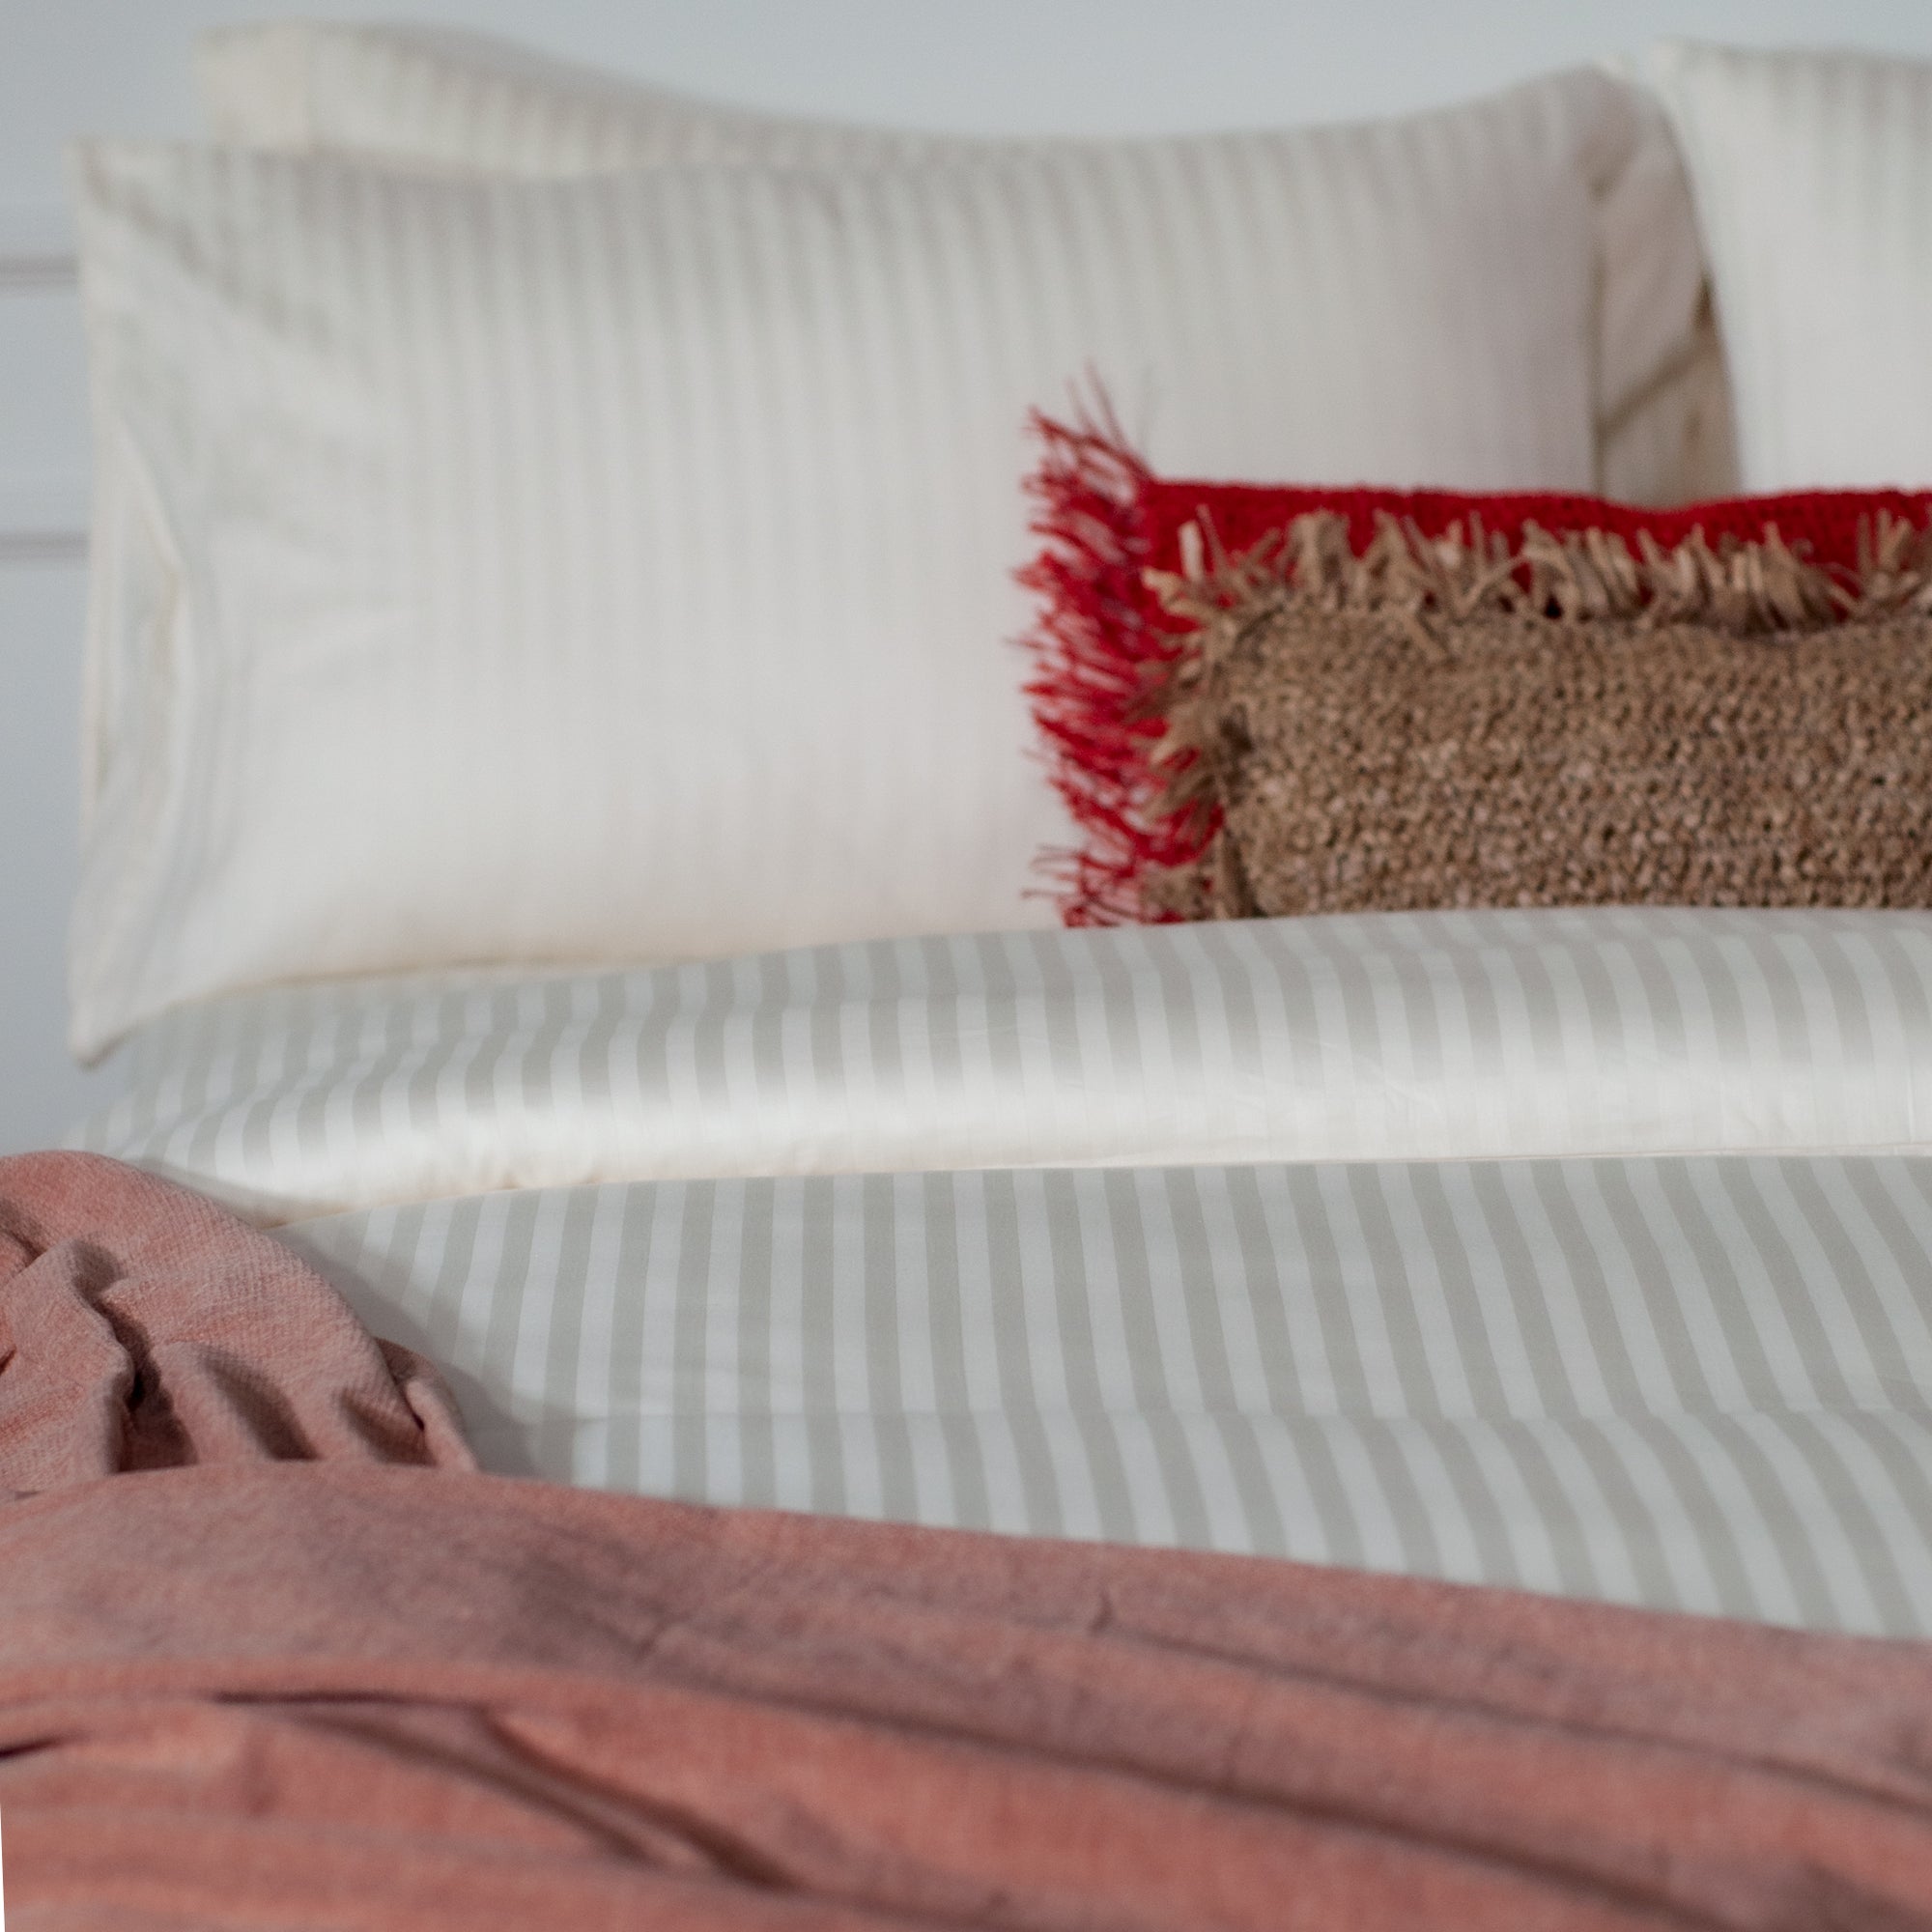 Einteiliger perlweiß gestreifter Bettbezug aus 100 % Baumwollsatin